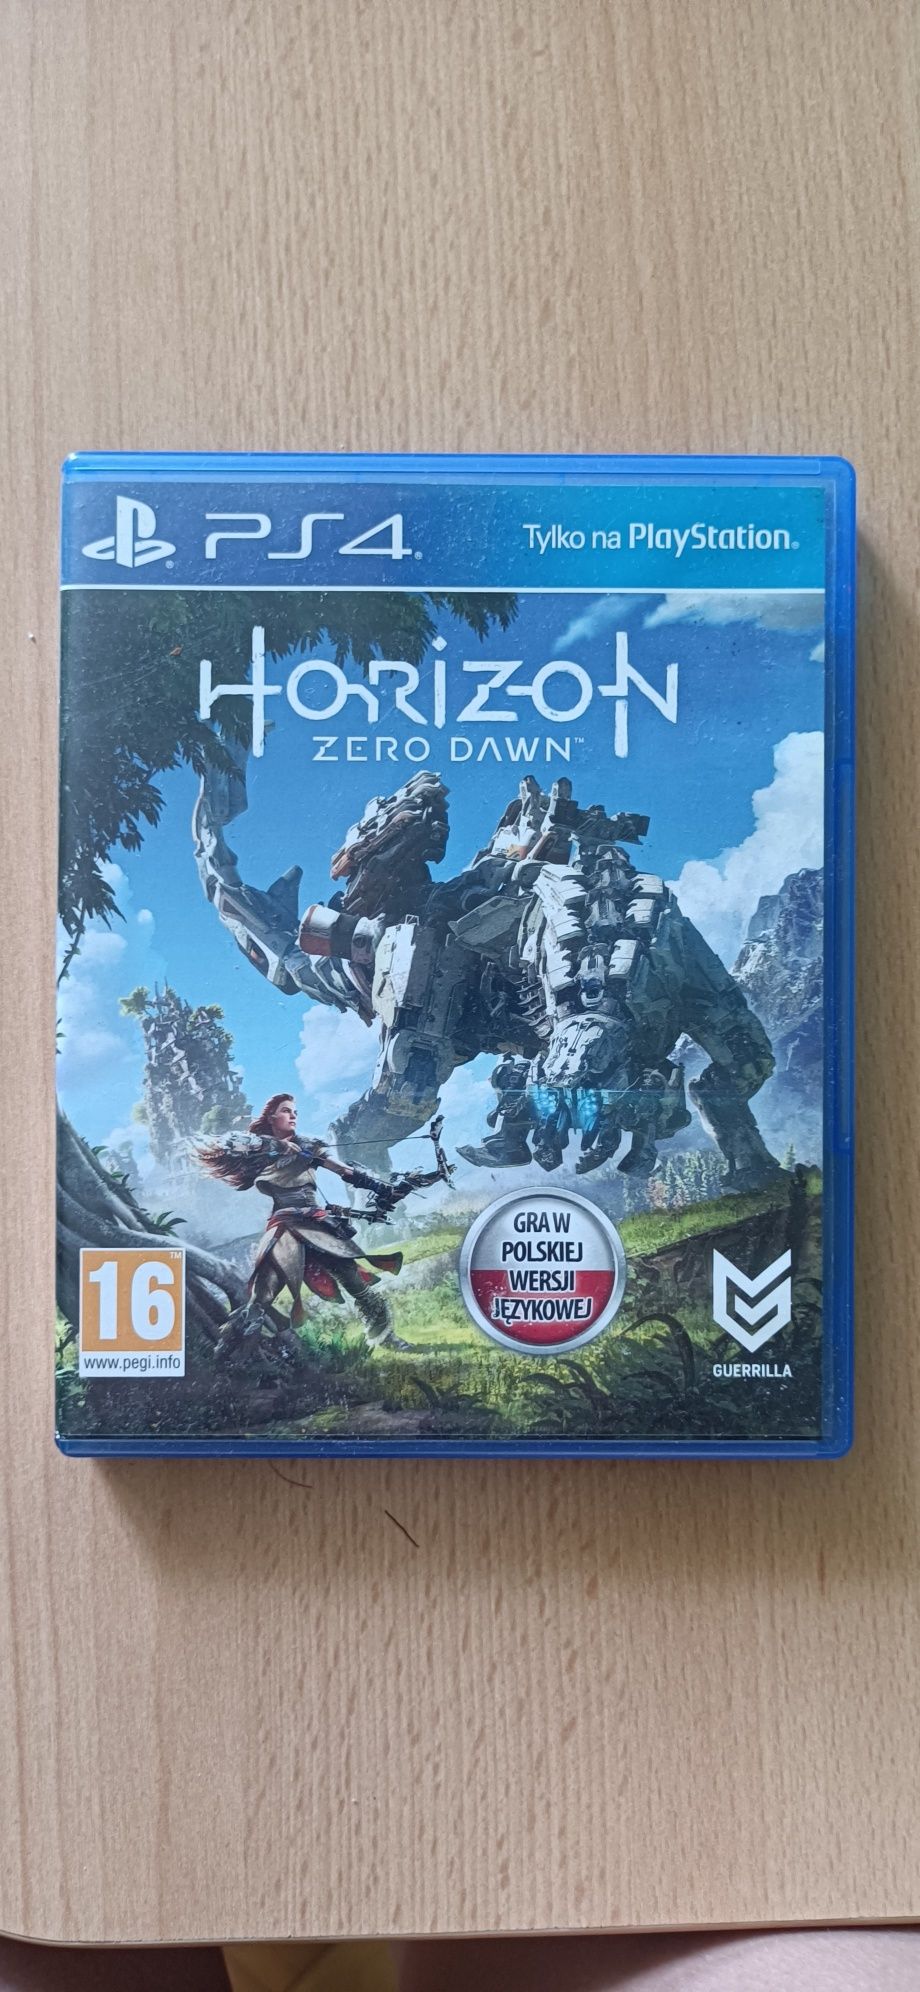 Gra Horizon Zero Down w pełnej polskiej wersji językowej